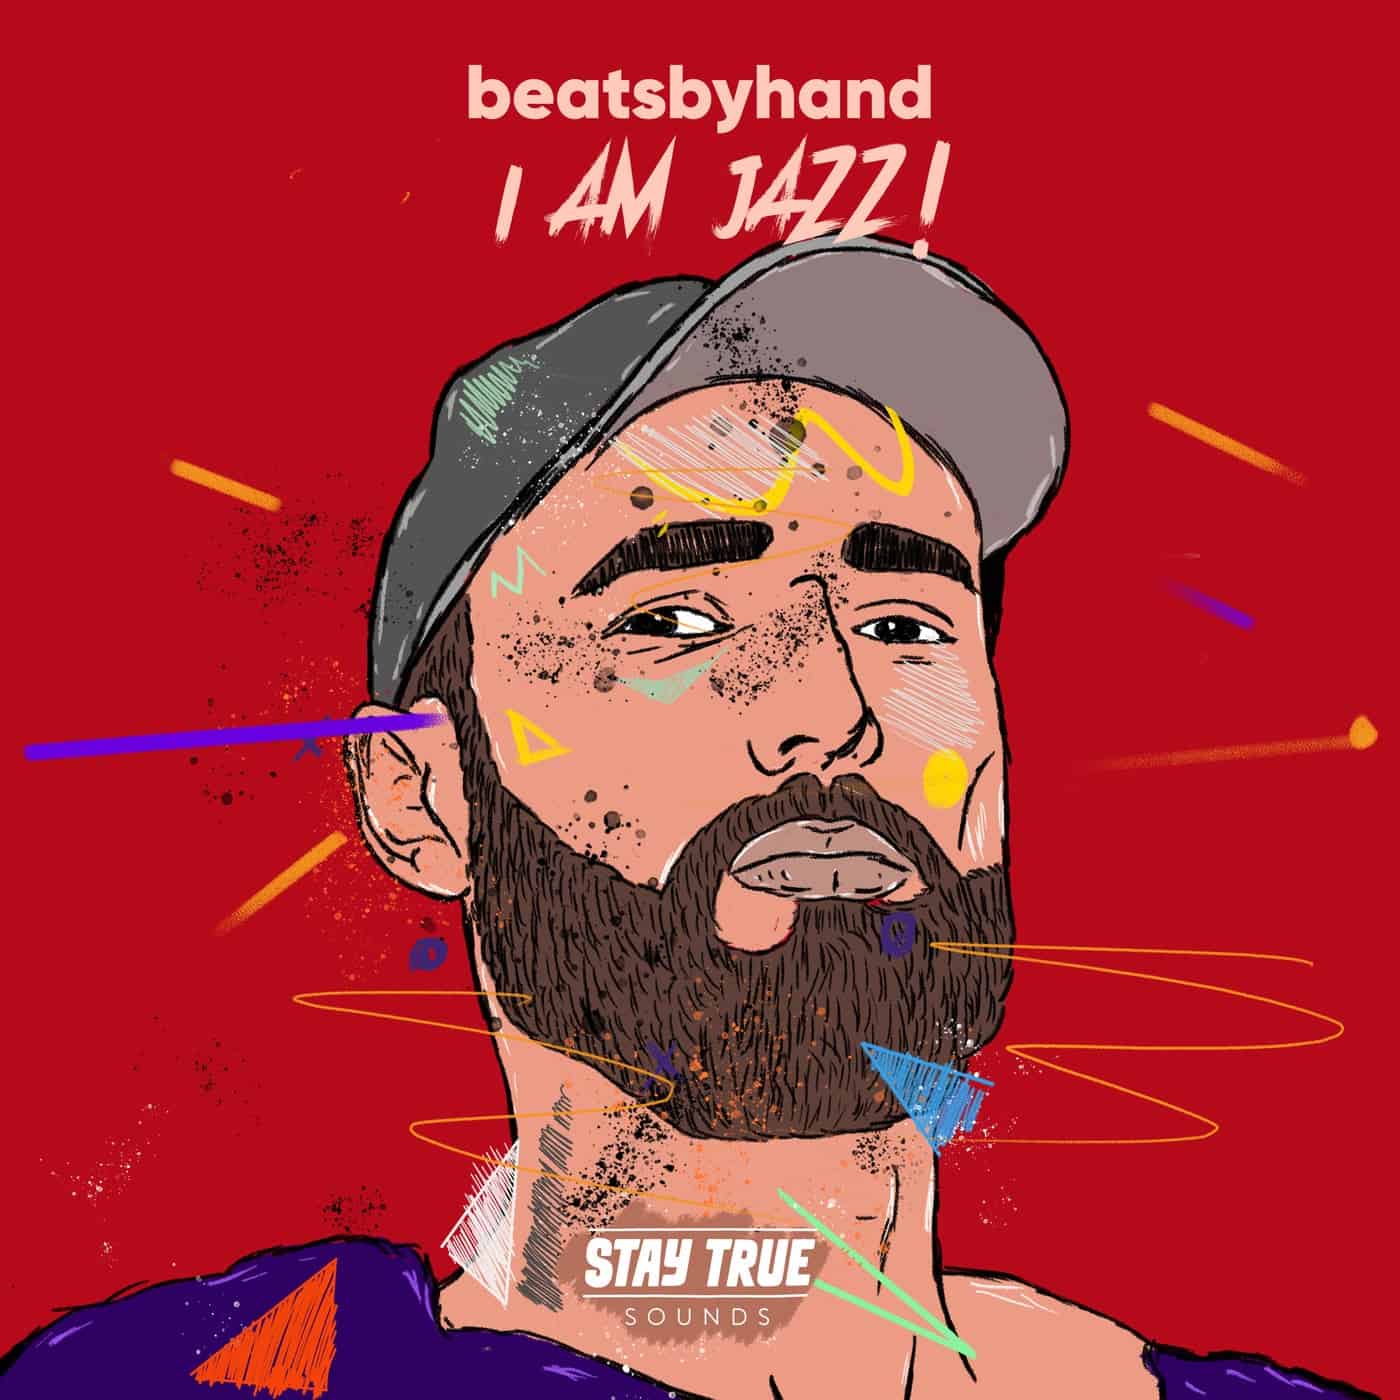 Download beatsbyhand, Kali Mija - I Am Jazz on Electrobuzz